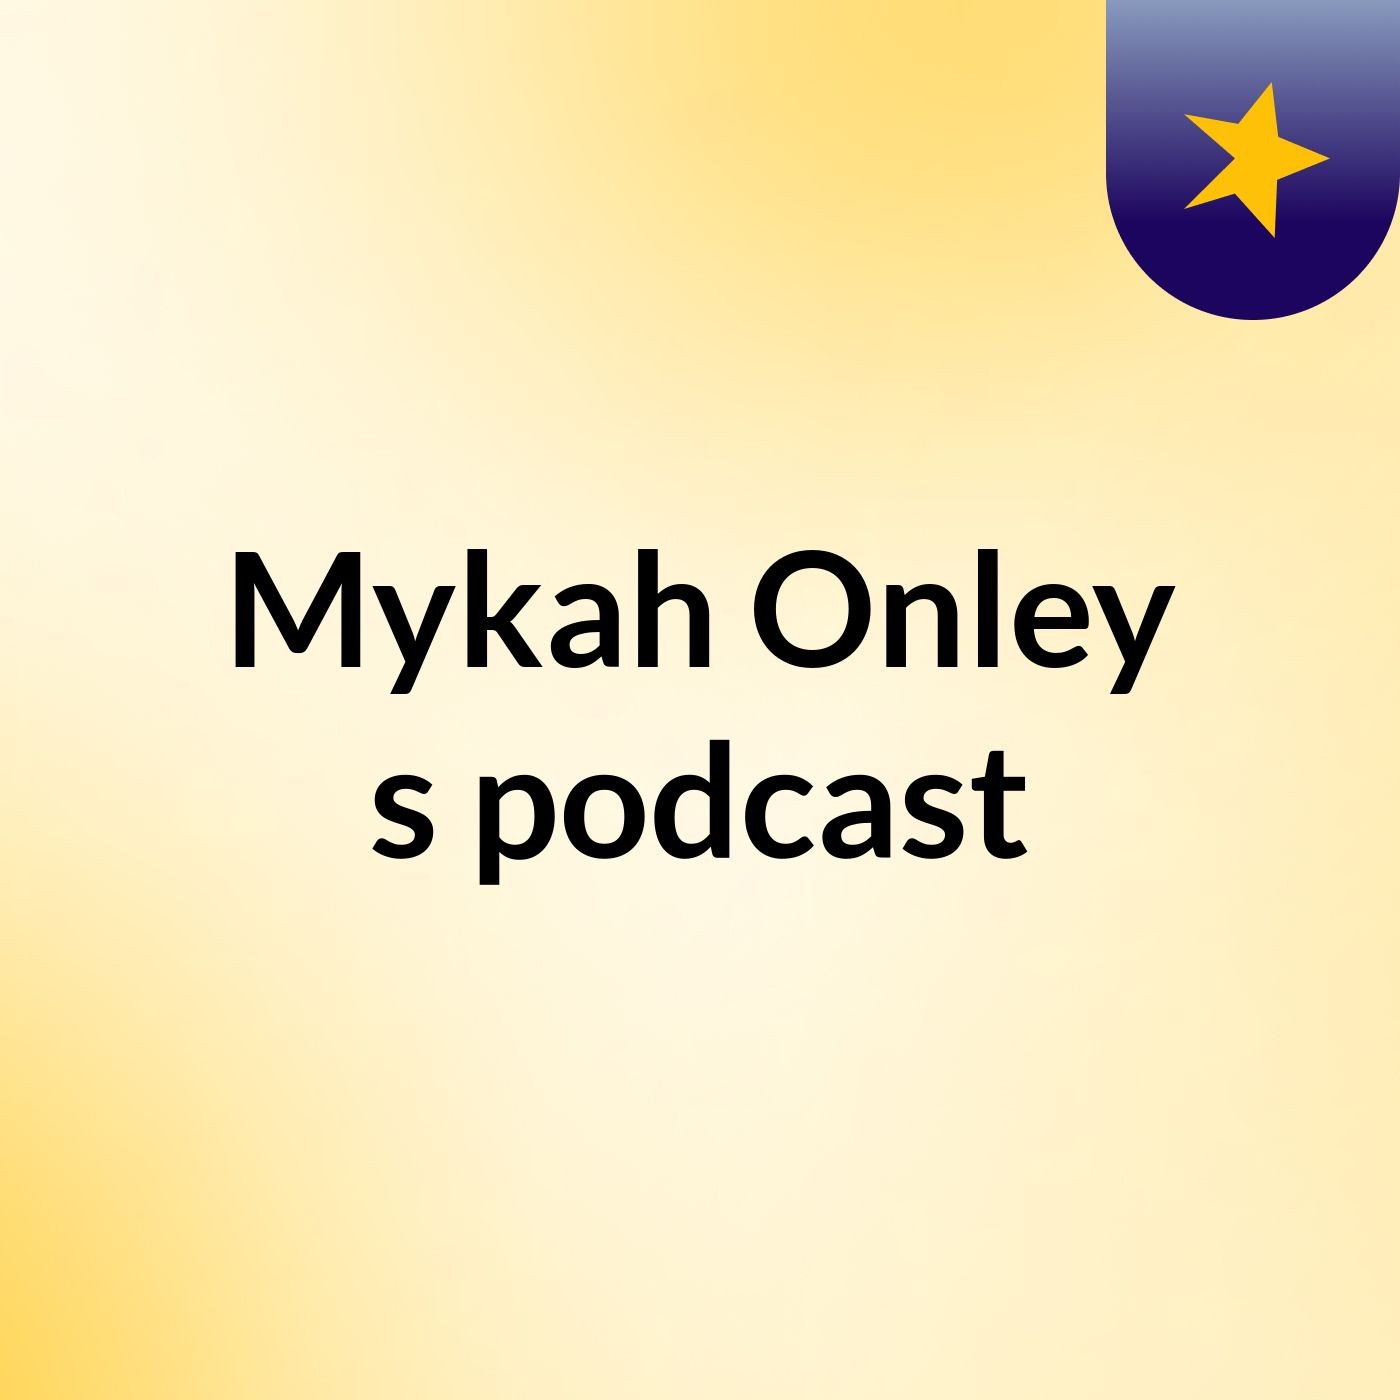 Mykah Onley's podcast